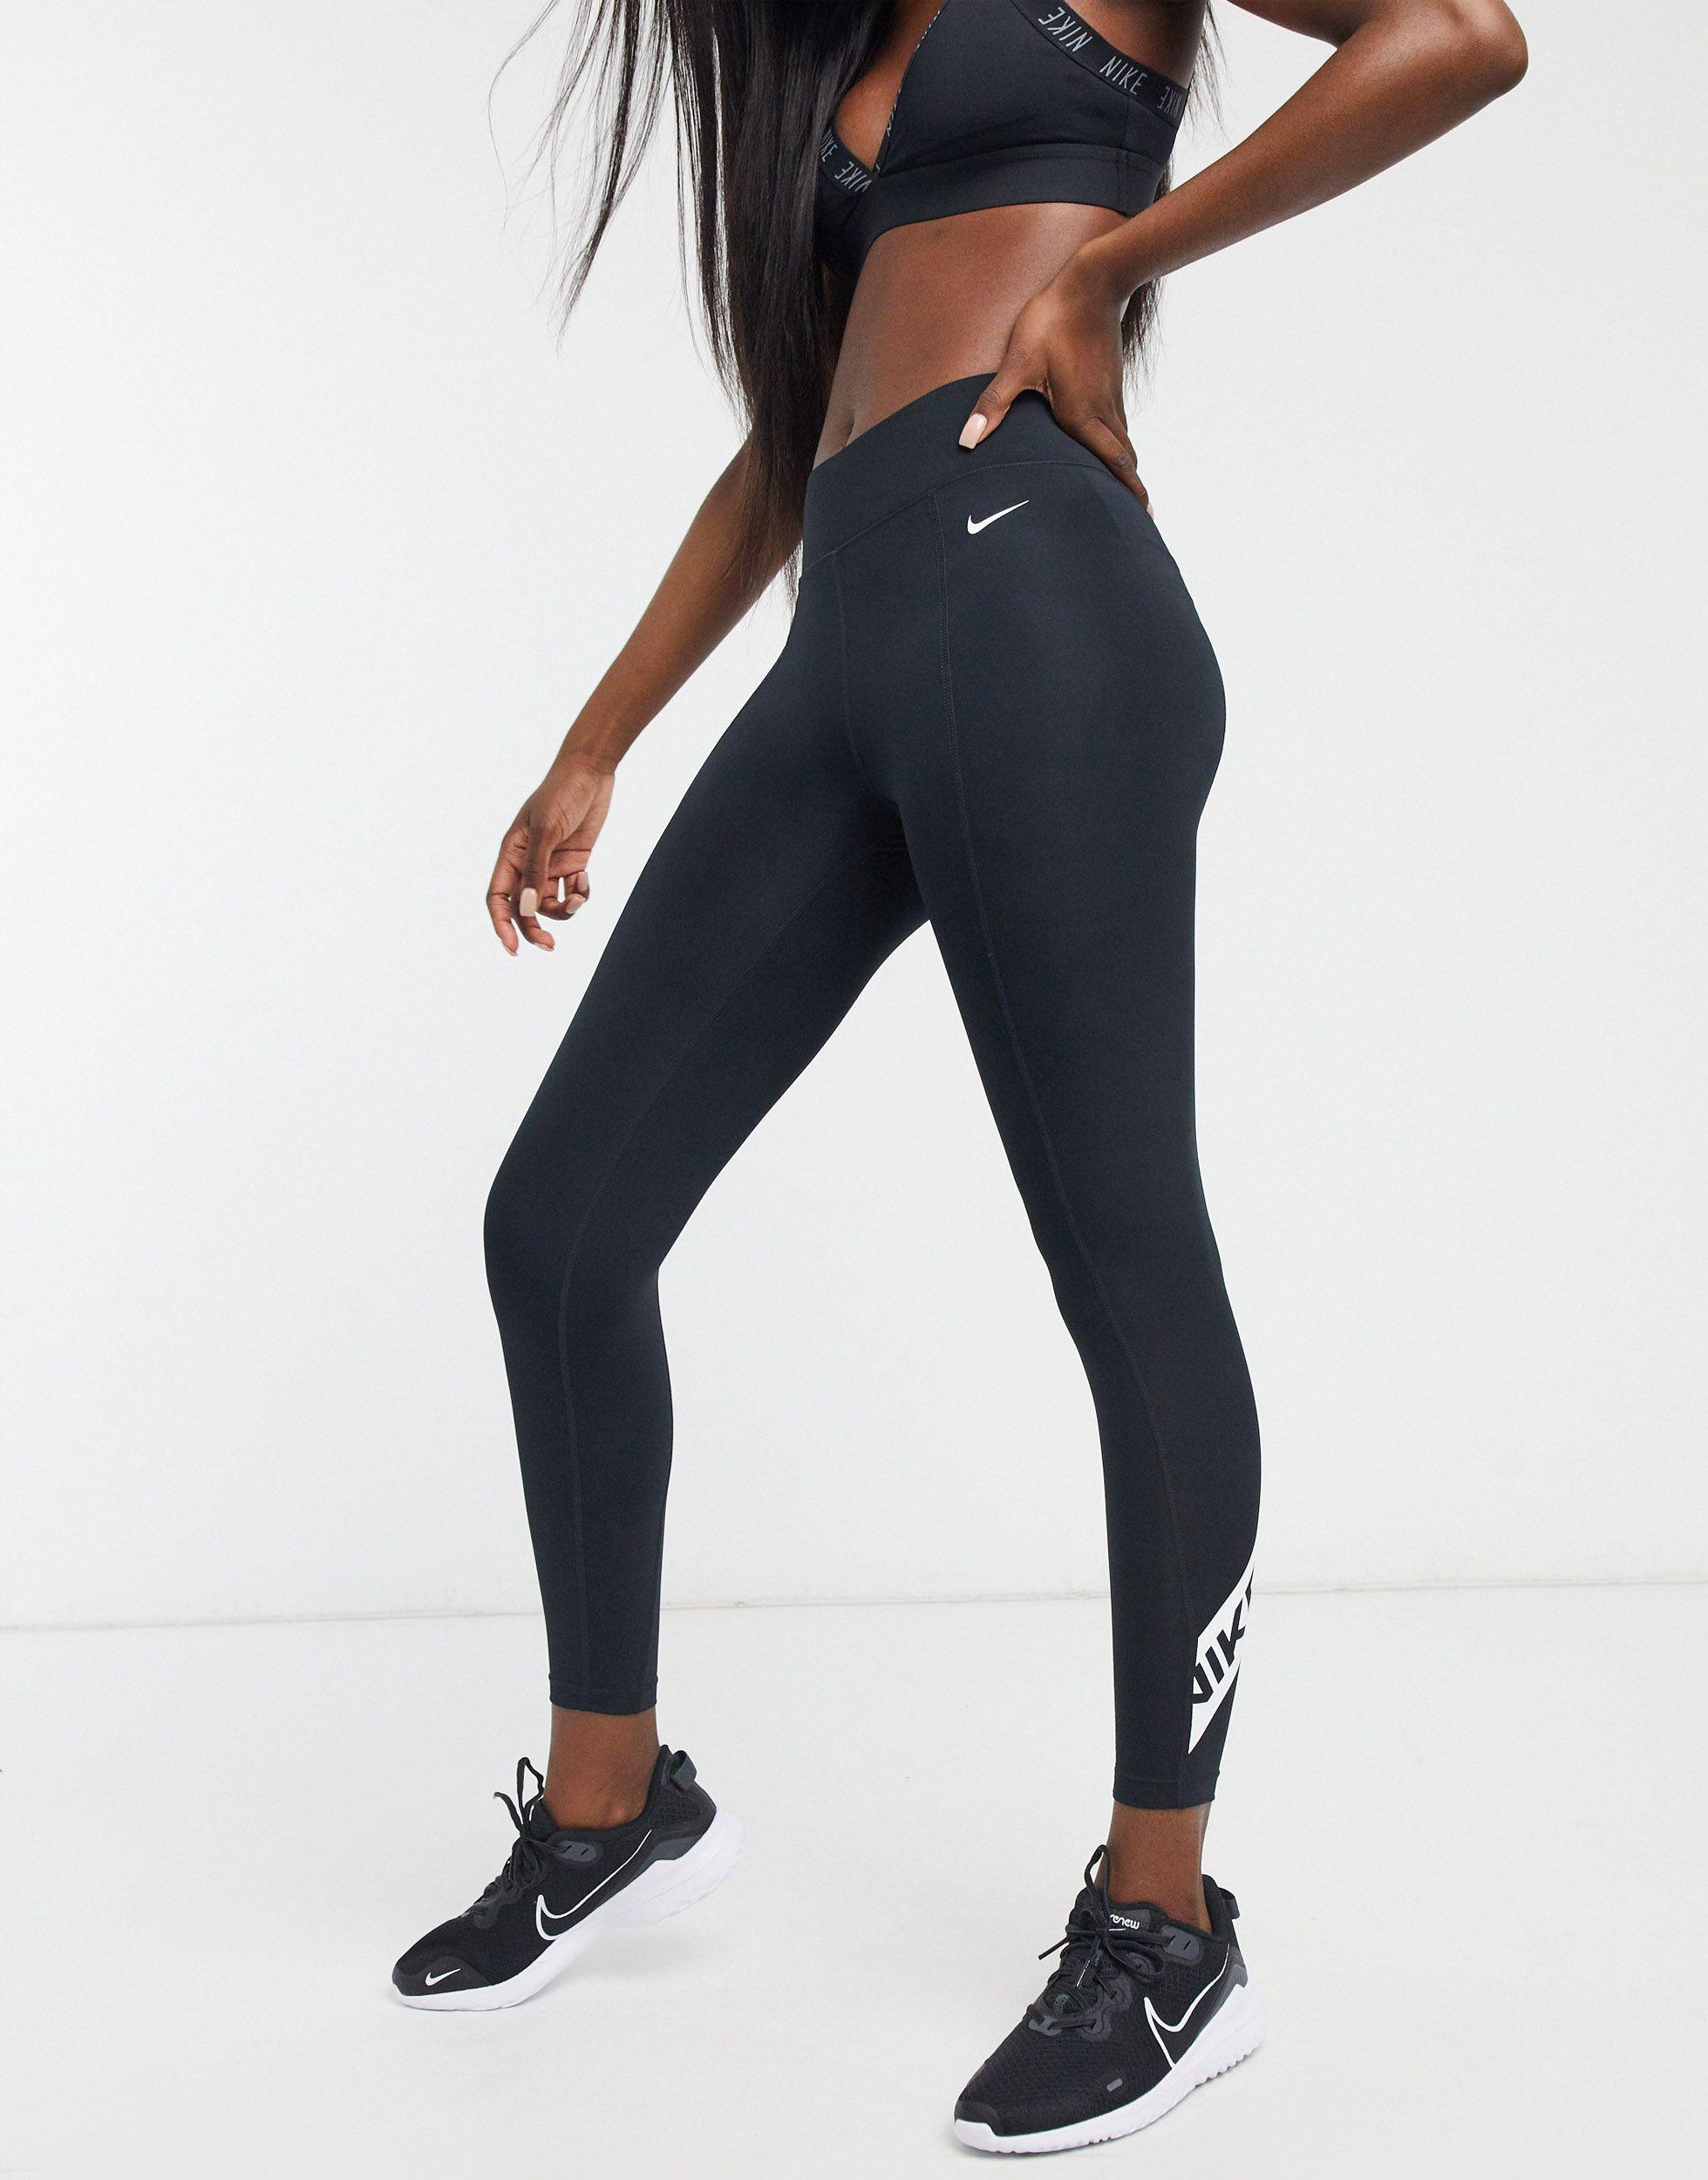 Nike Nike Pro Training Cropped leggings With Logo Taping in Black | Lyst UK